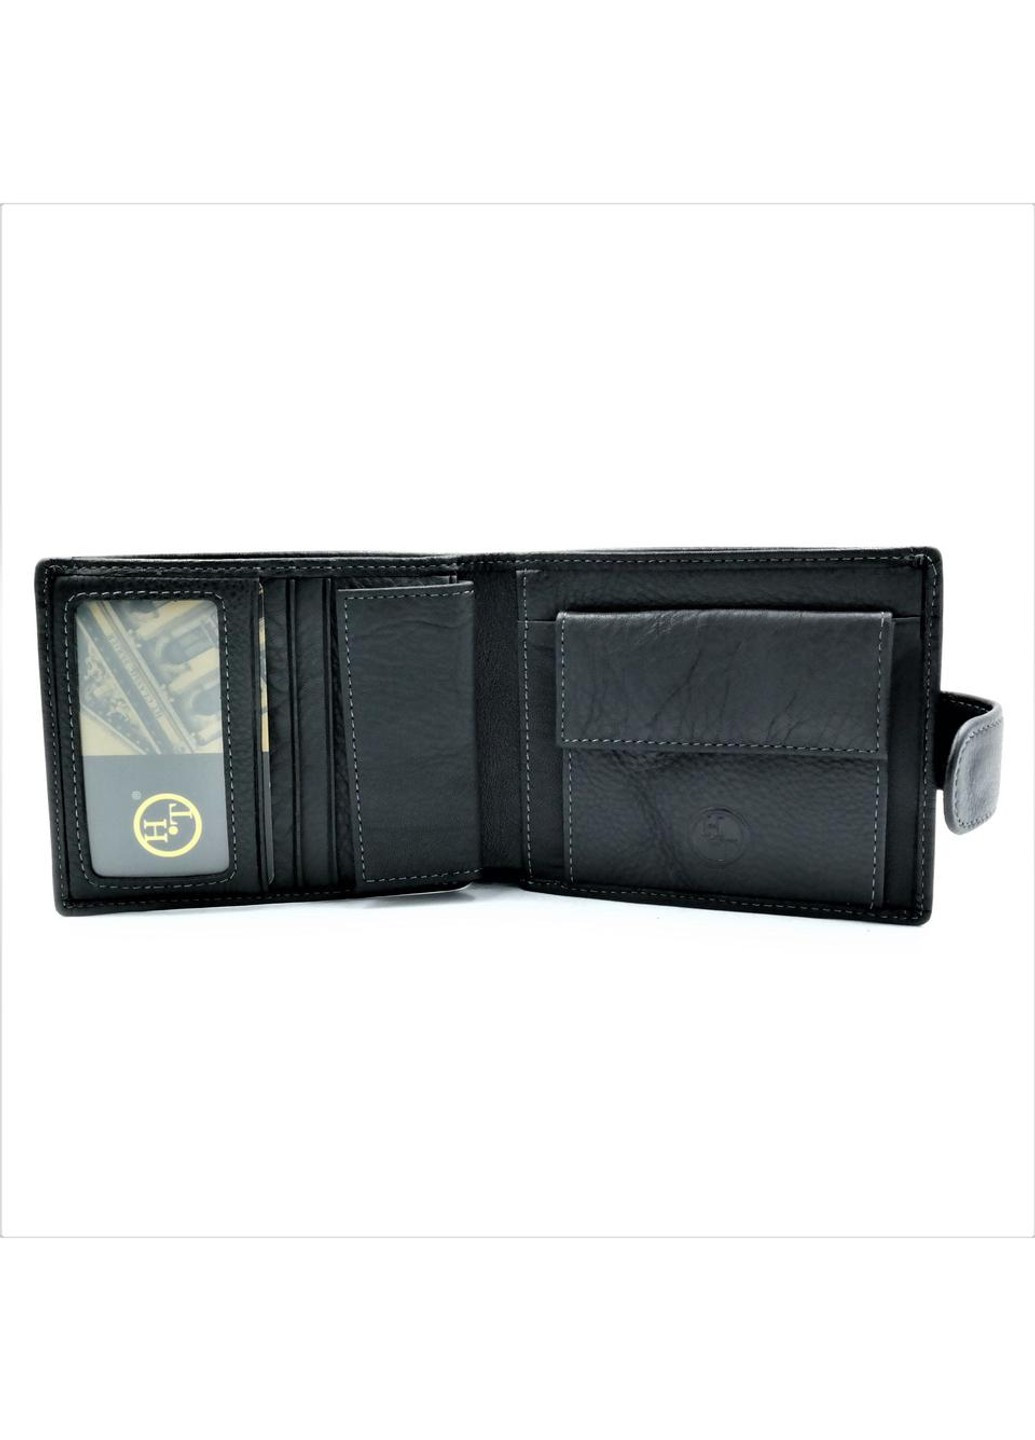 Мужской кожаный кошелек 12 х 9,5 х 2 см Черный wtro-539 Weatro (272596107)